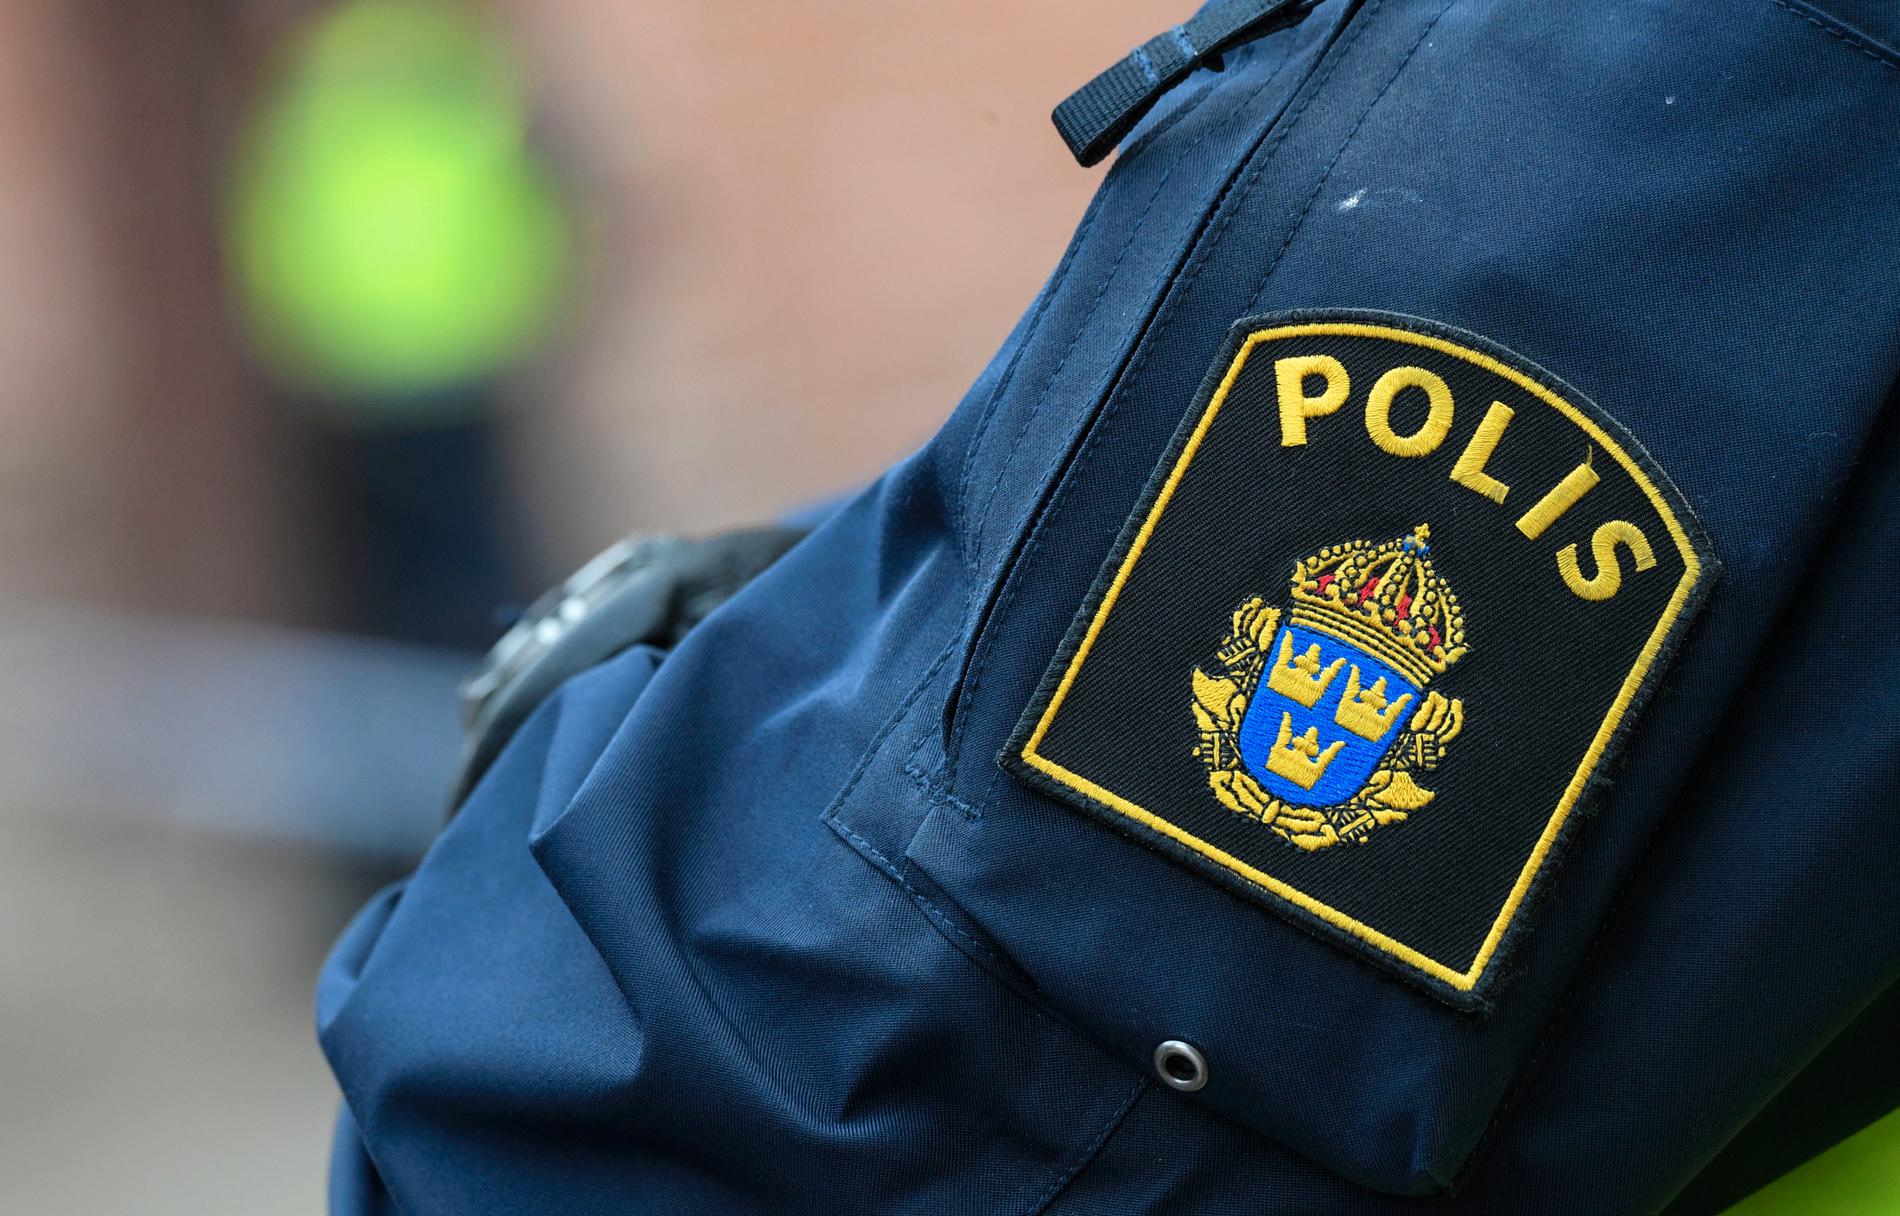 Den 50-årige mannen uppgav att han var civilpolis när han stoppade en bilist i Arlöv utanför Malmö. Någon polis var han dock inte och nu fälls han för brottet föregivande av allmän ställning. Arkivbild.